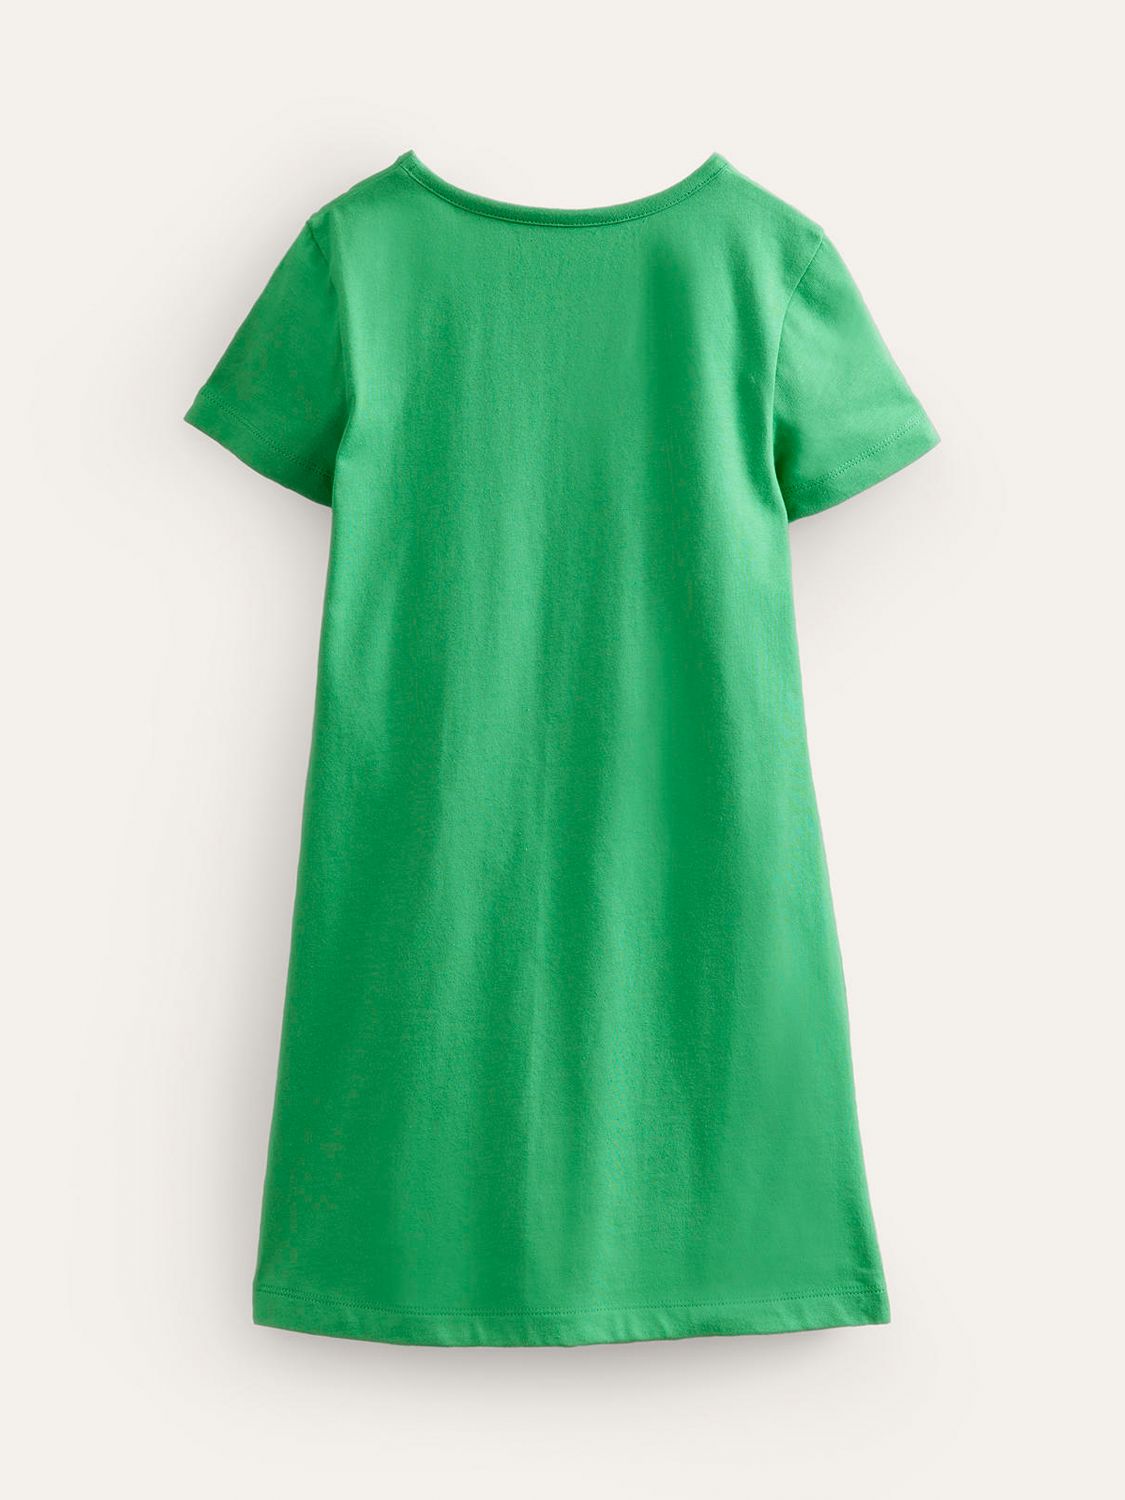 Mini Boden Kids' Vanilla Dog Applique Jersey Dress, Green, 12-18 months